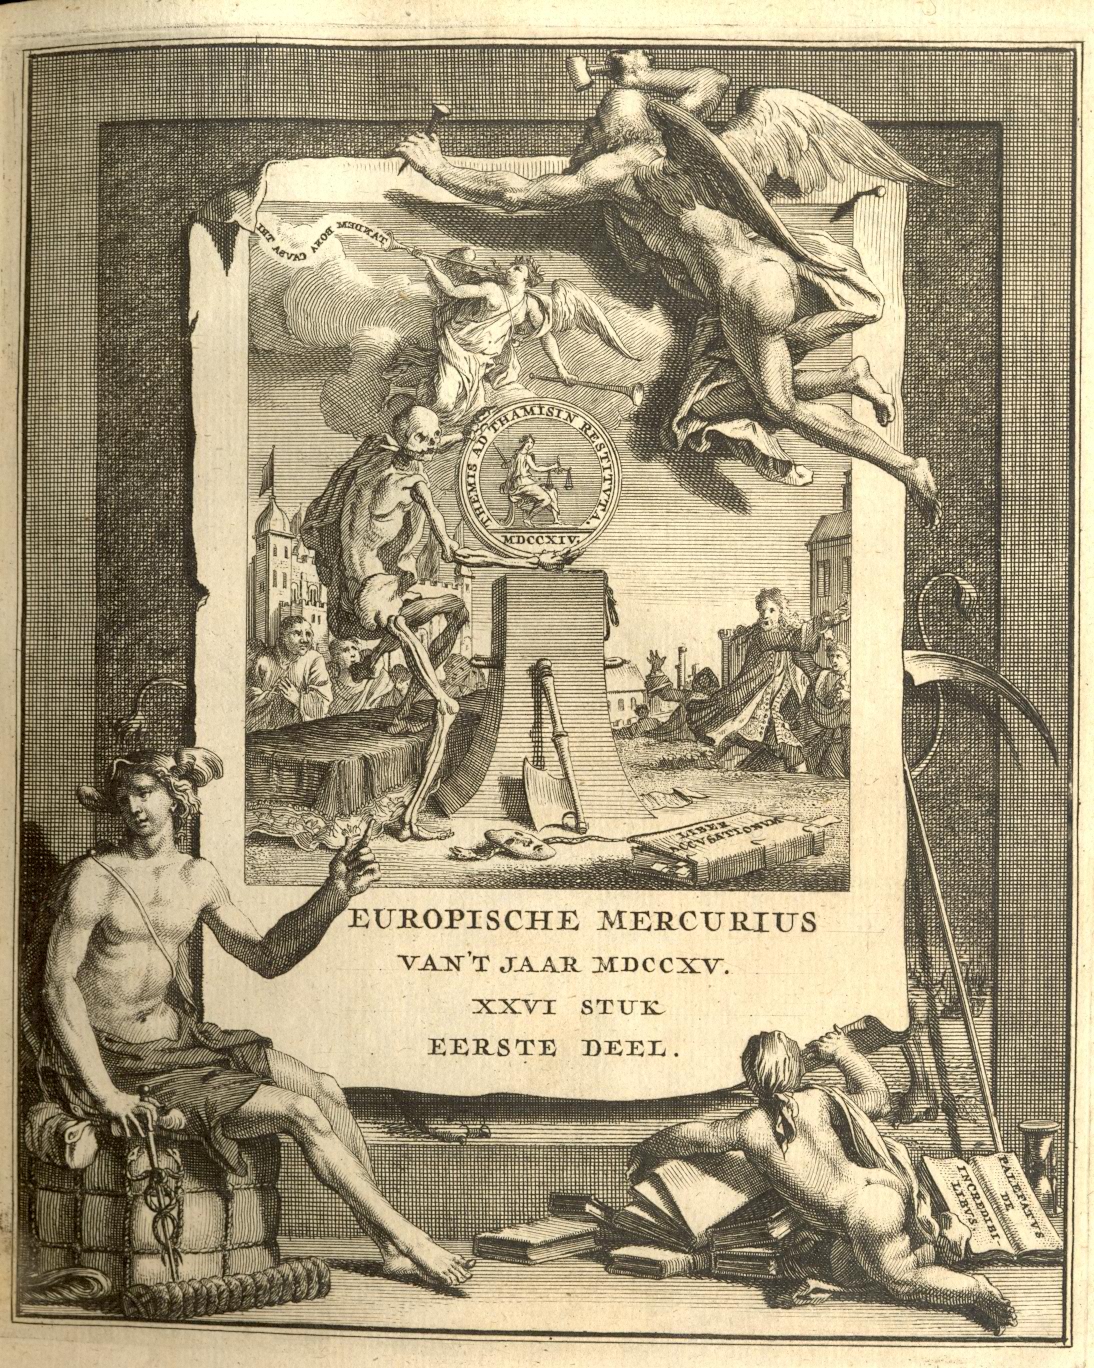  Europische Mercurius, 1715.